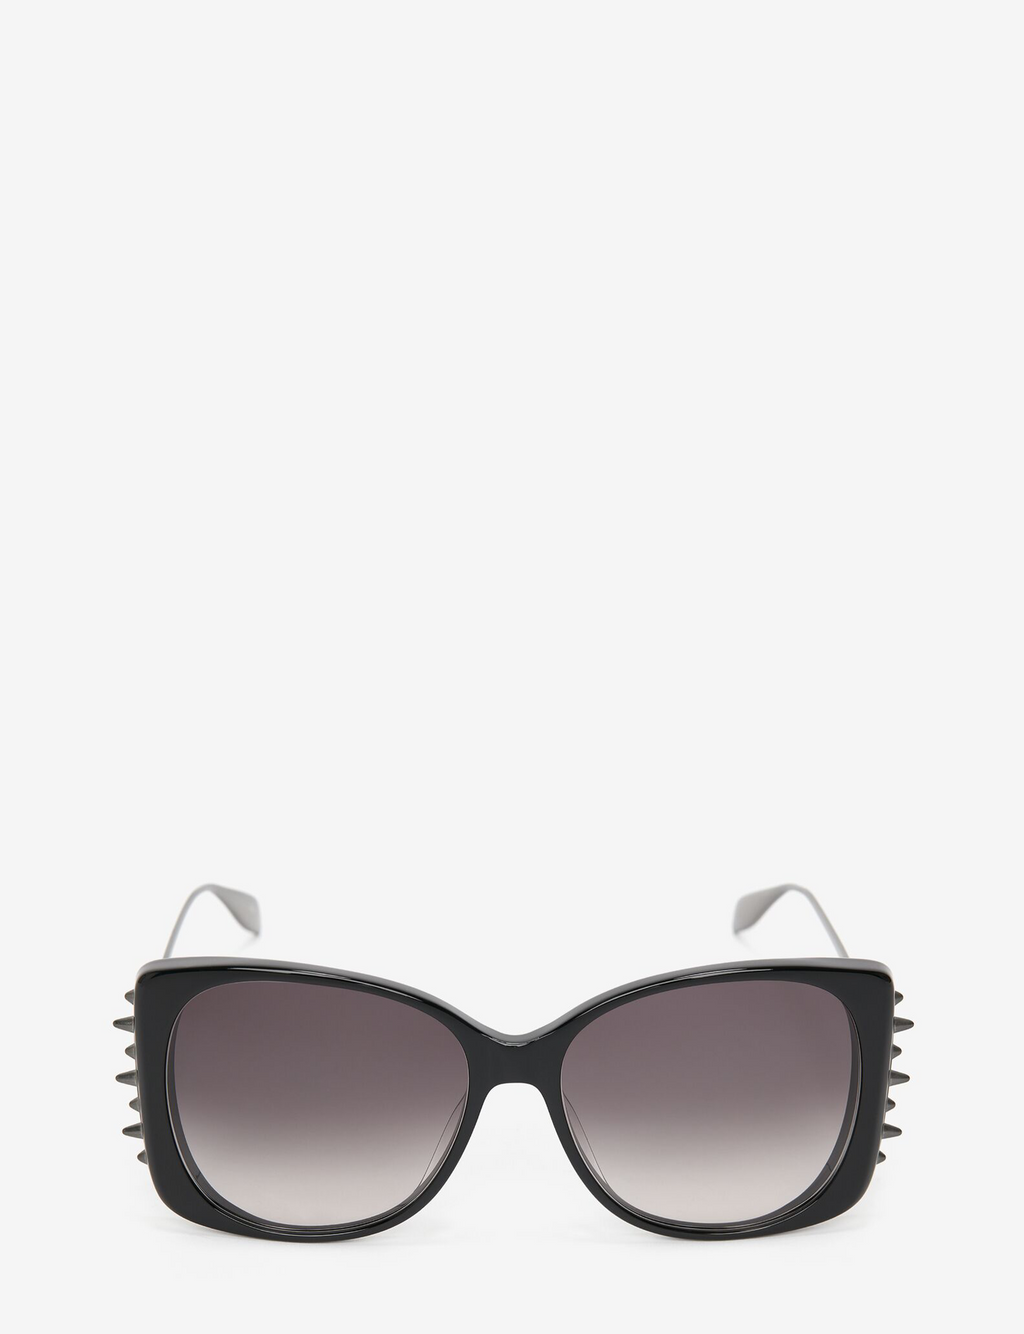 Alexander McQueen Spike Sunglasses, Black/Ruthen